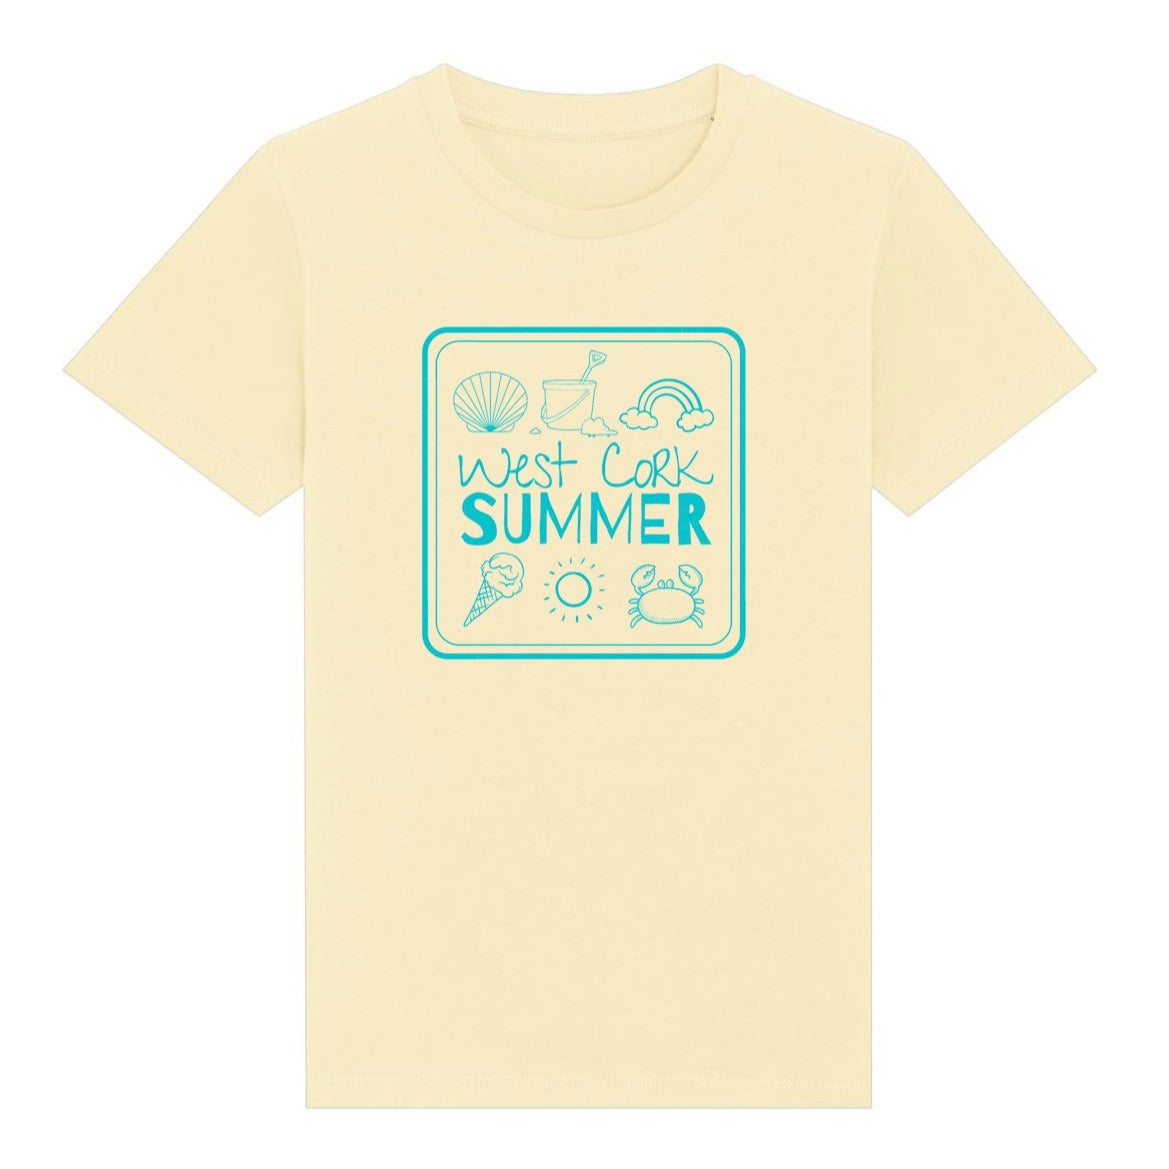 West Cork Summer T-shirt